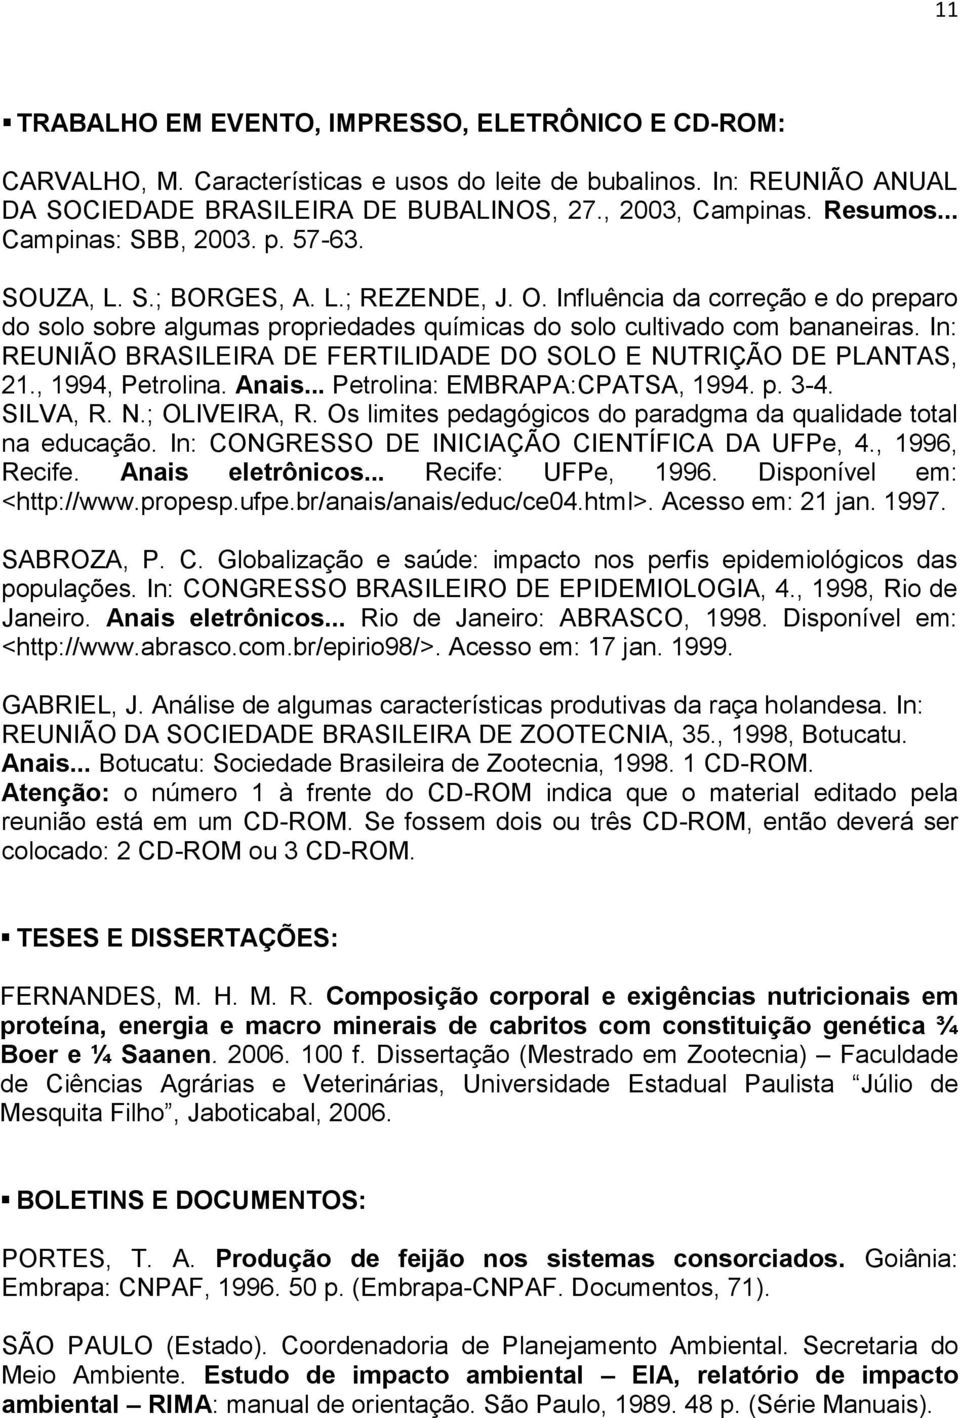 In: REUNIÃO BRASILEIRA DE FERTILIDADE DO SOLO E NUTRIÇÃO DE PLANTAS, 21., 1994, Petrolina. Anais... Petrolina: EMBRAPA:CPATSA, 1994. p. 3-4. SILVA, R. N.; OLIVEIRA, R.